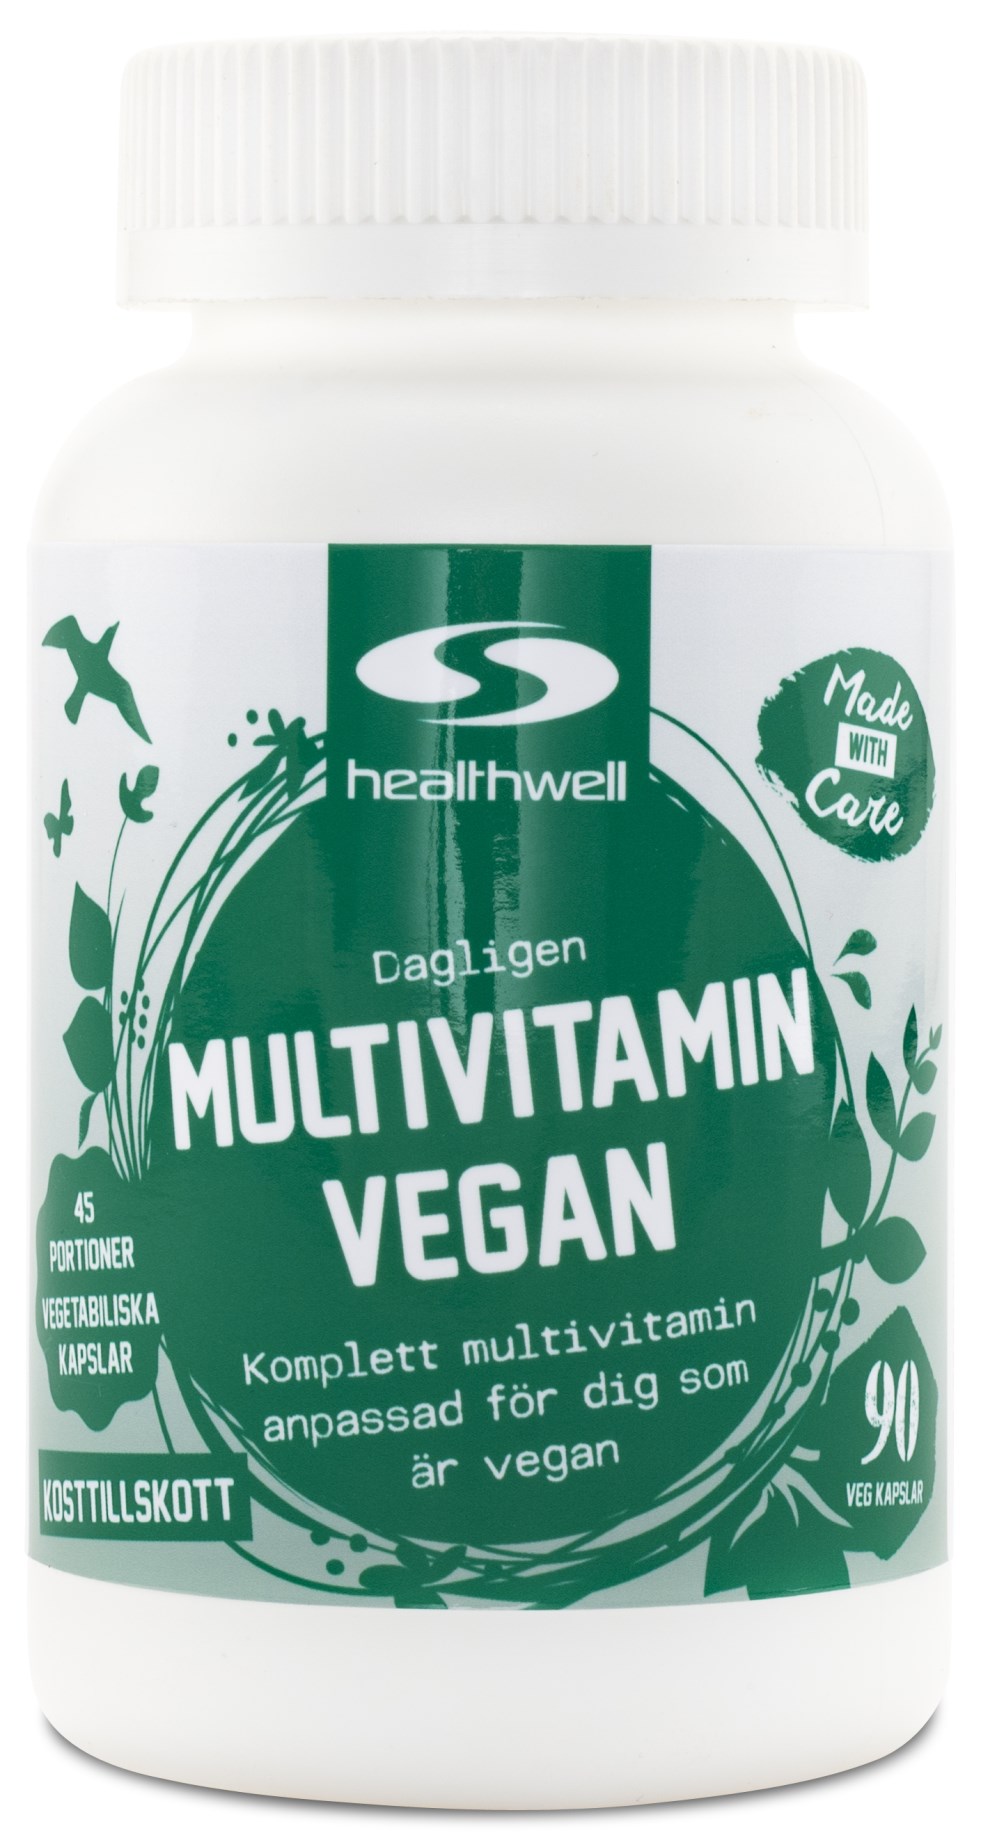 Healthwell Multivitamin Vegan - Bästa veganska multivitaminen